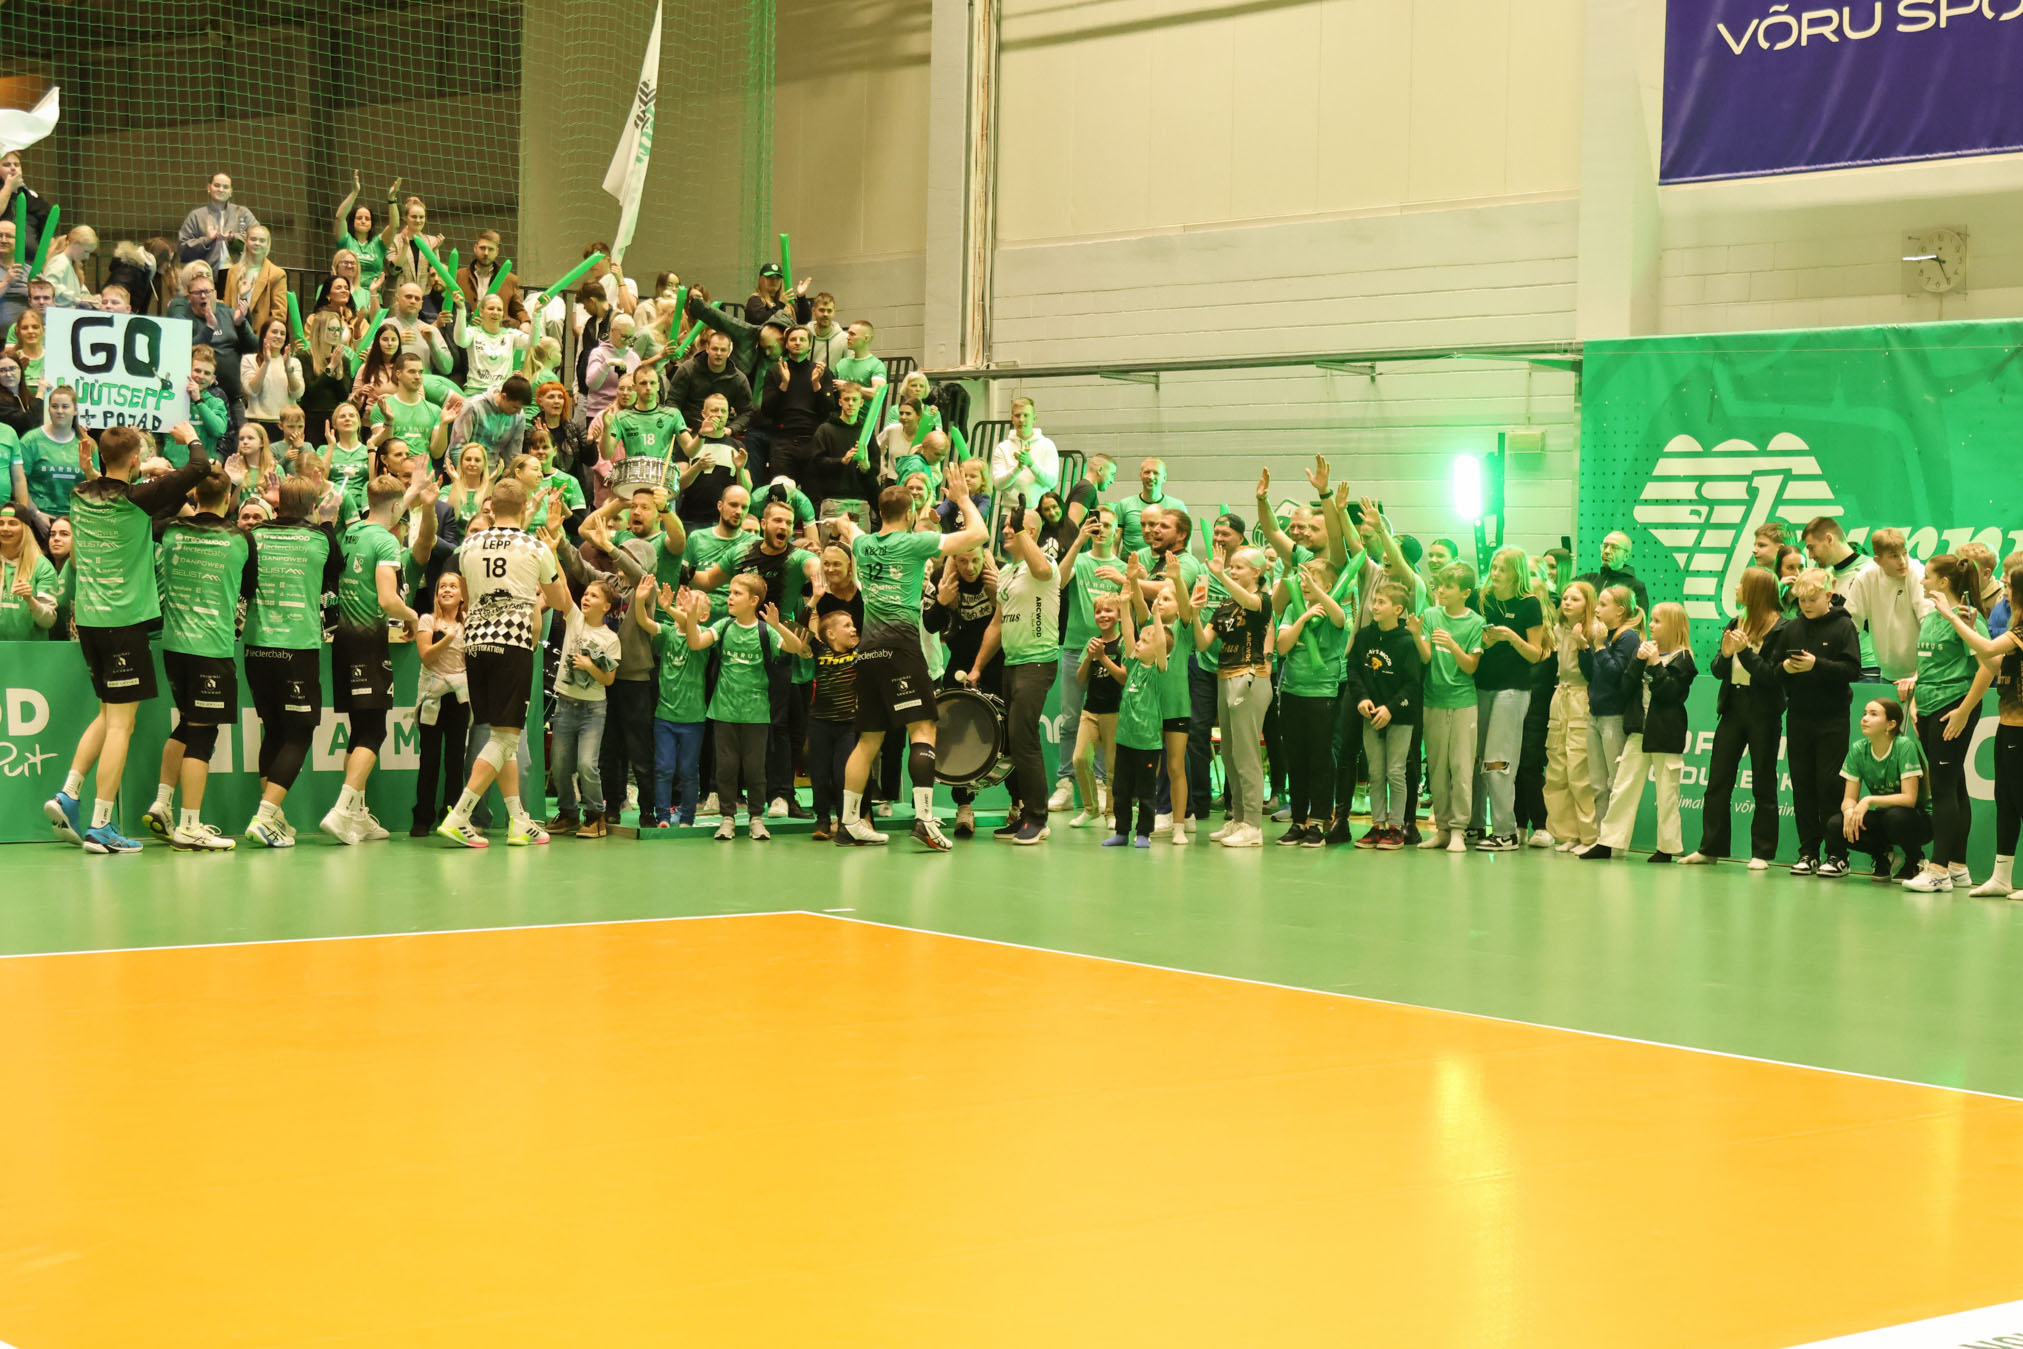  Teisipäevane otsustav mäng tõi Võru  spordikeskusesse 850 pealtvaatajat.  Fotod: HELIN POTTER